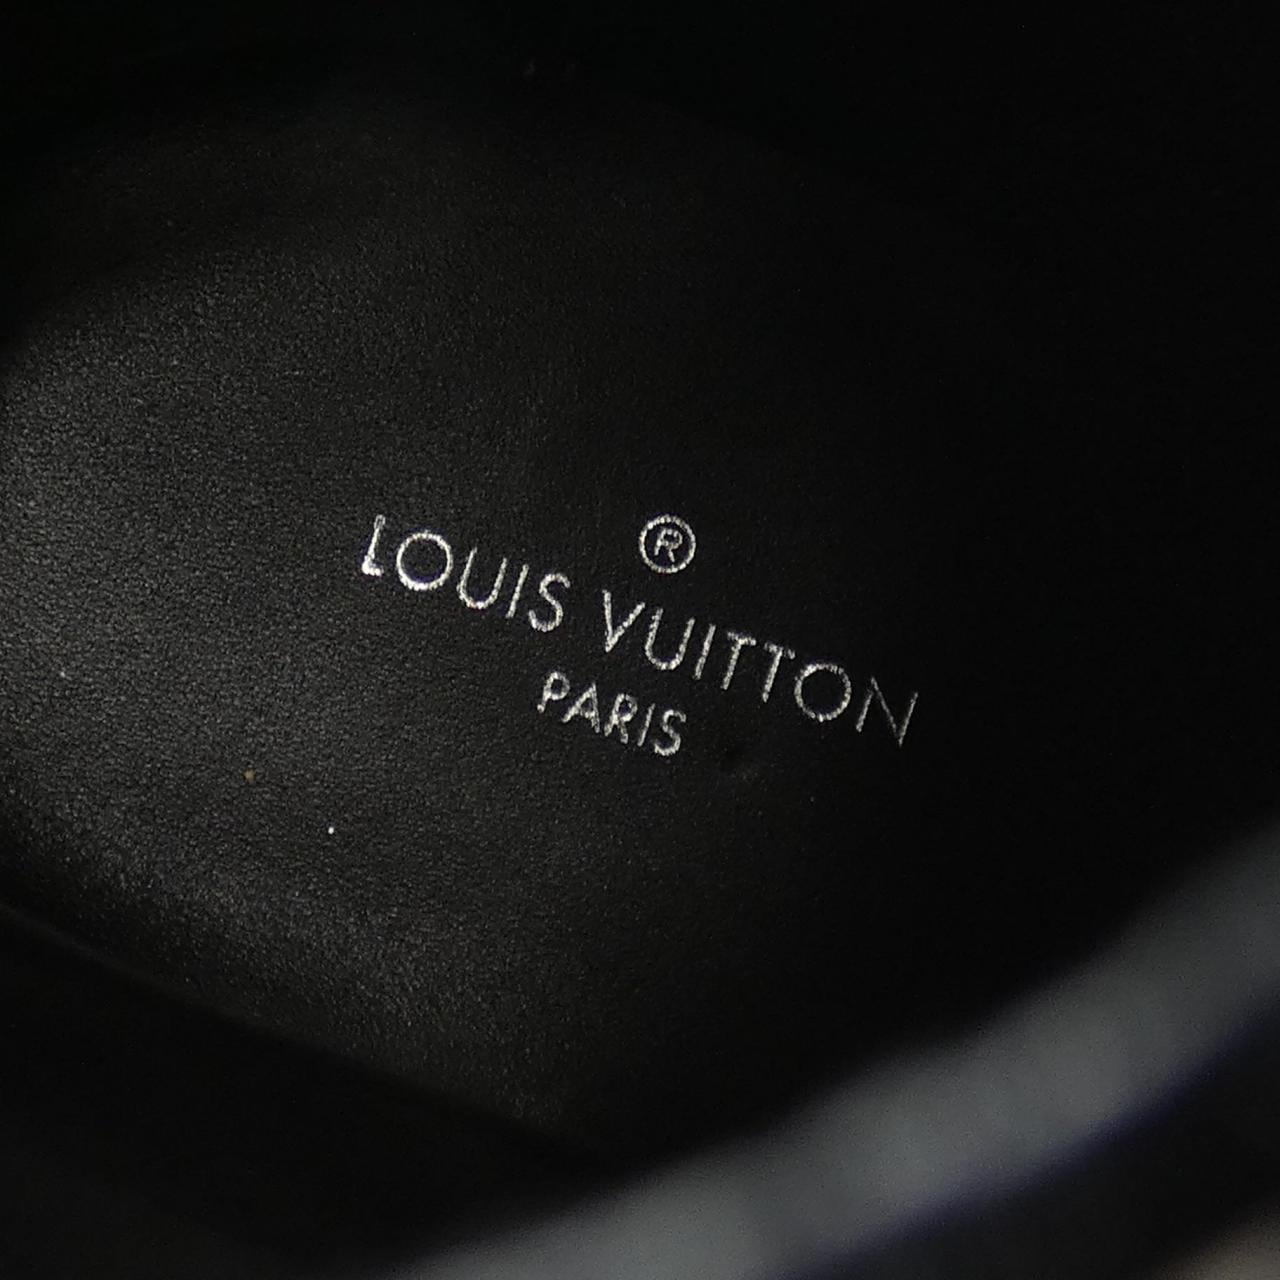 LOUIS LOUIS VUITTON boots